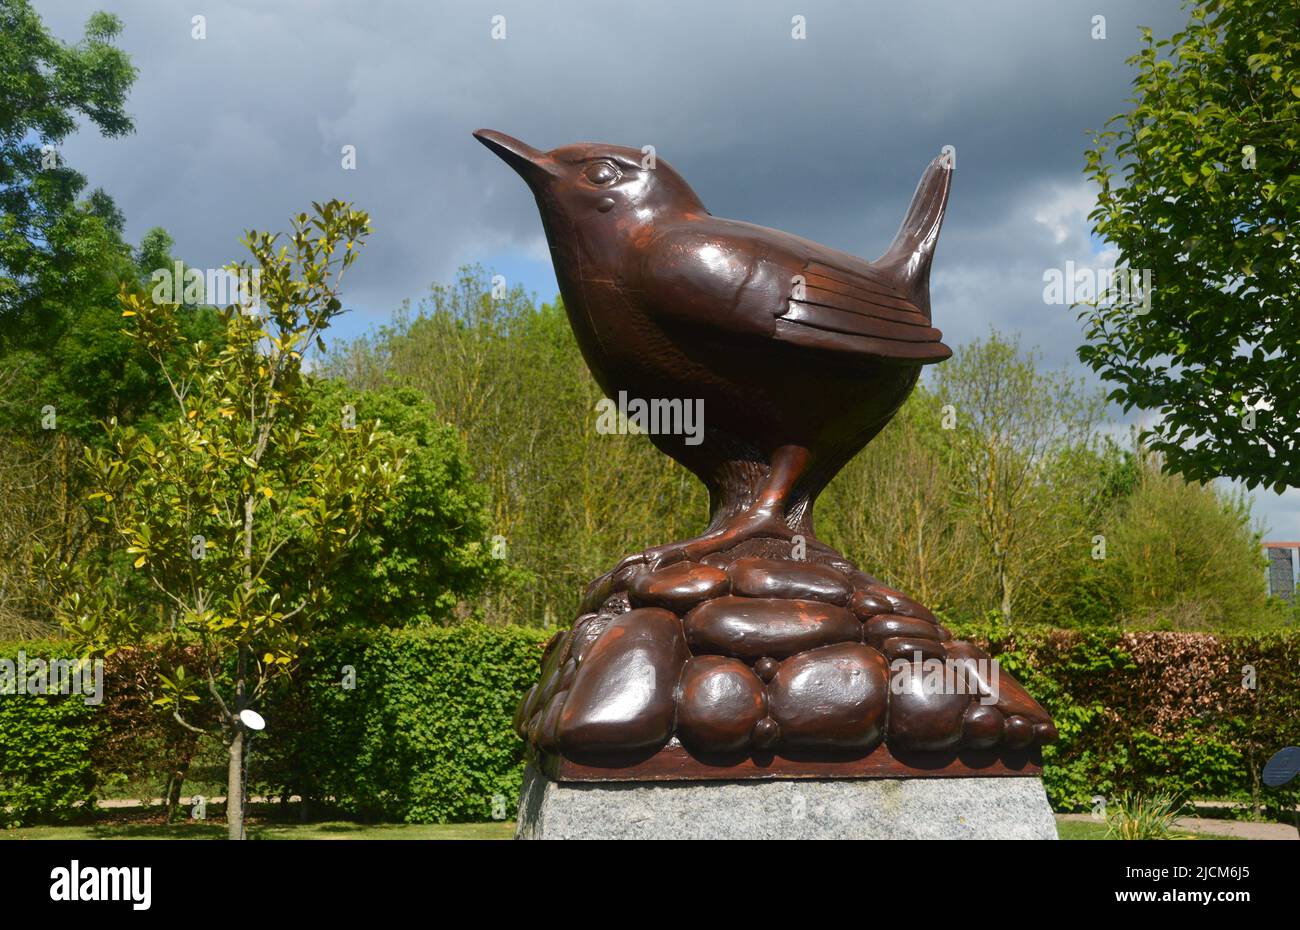 Grande sculpture d'oiseaux en bois sur le Mémorial d'Aguila au Service naval royal des femmes à l'Arboretum du Mémorial national, Staffordshire, Angleterre, Royaume-Uni. Banque D'Images